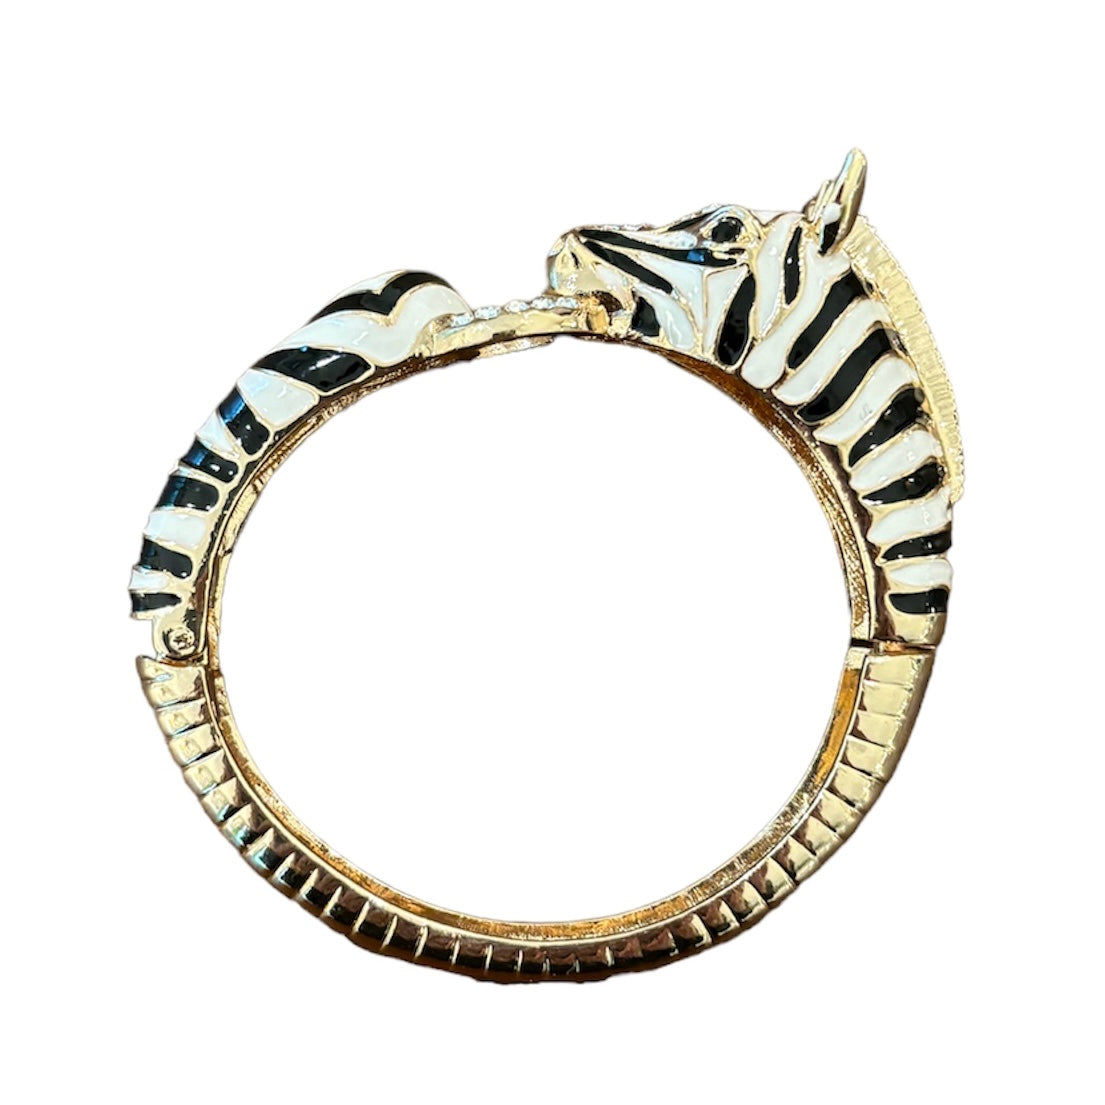 Zebra Hinged Bracelet in Black/White